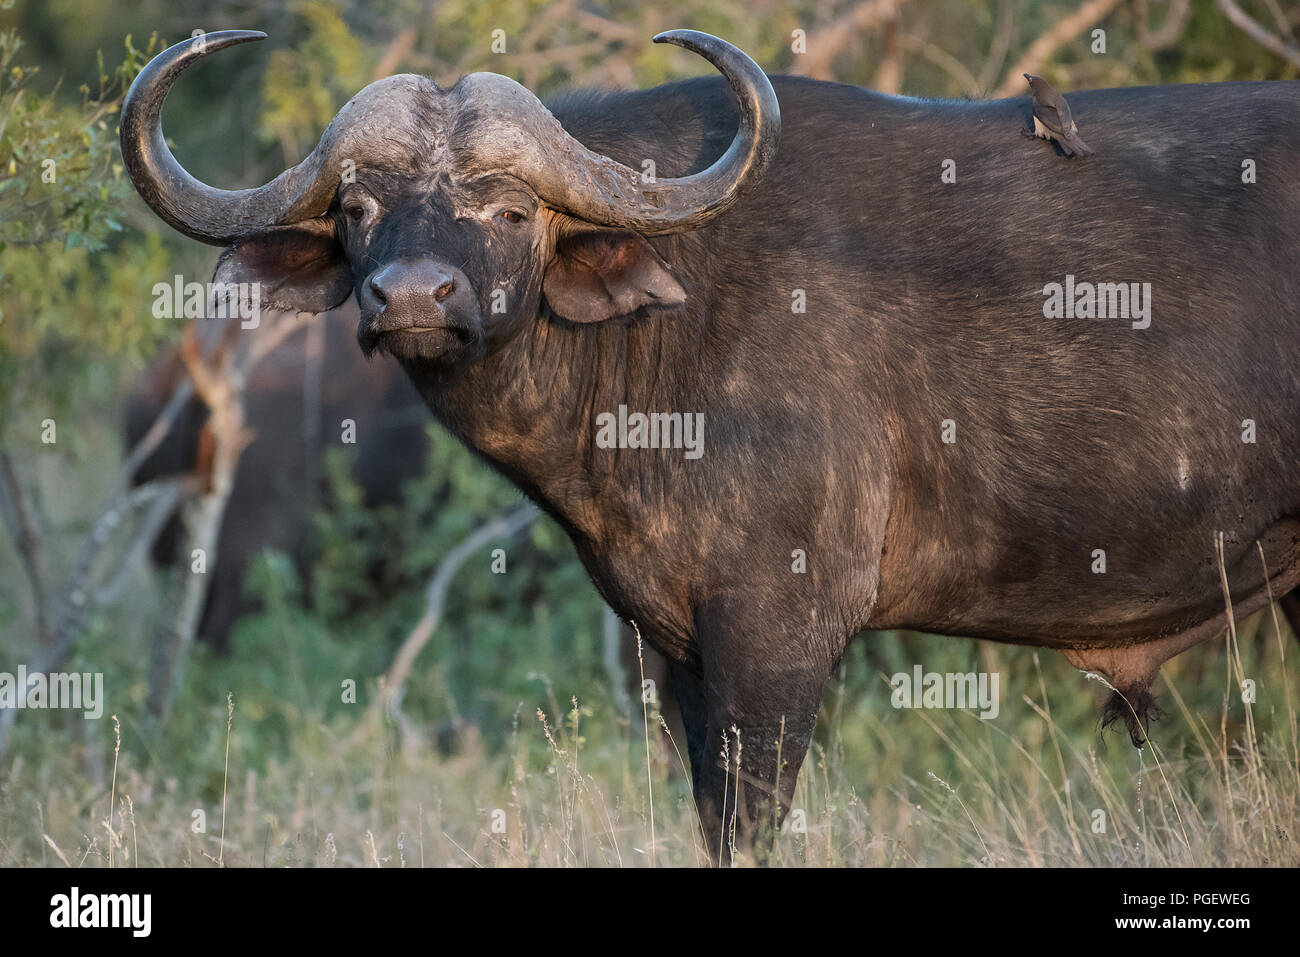 Vista lateral de gran africano intimidatorio Cape Buffalo mirando a la cámara. Foto de stock